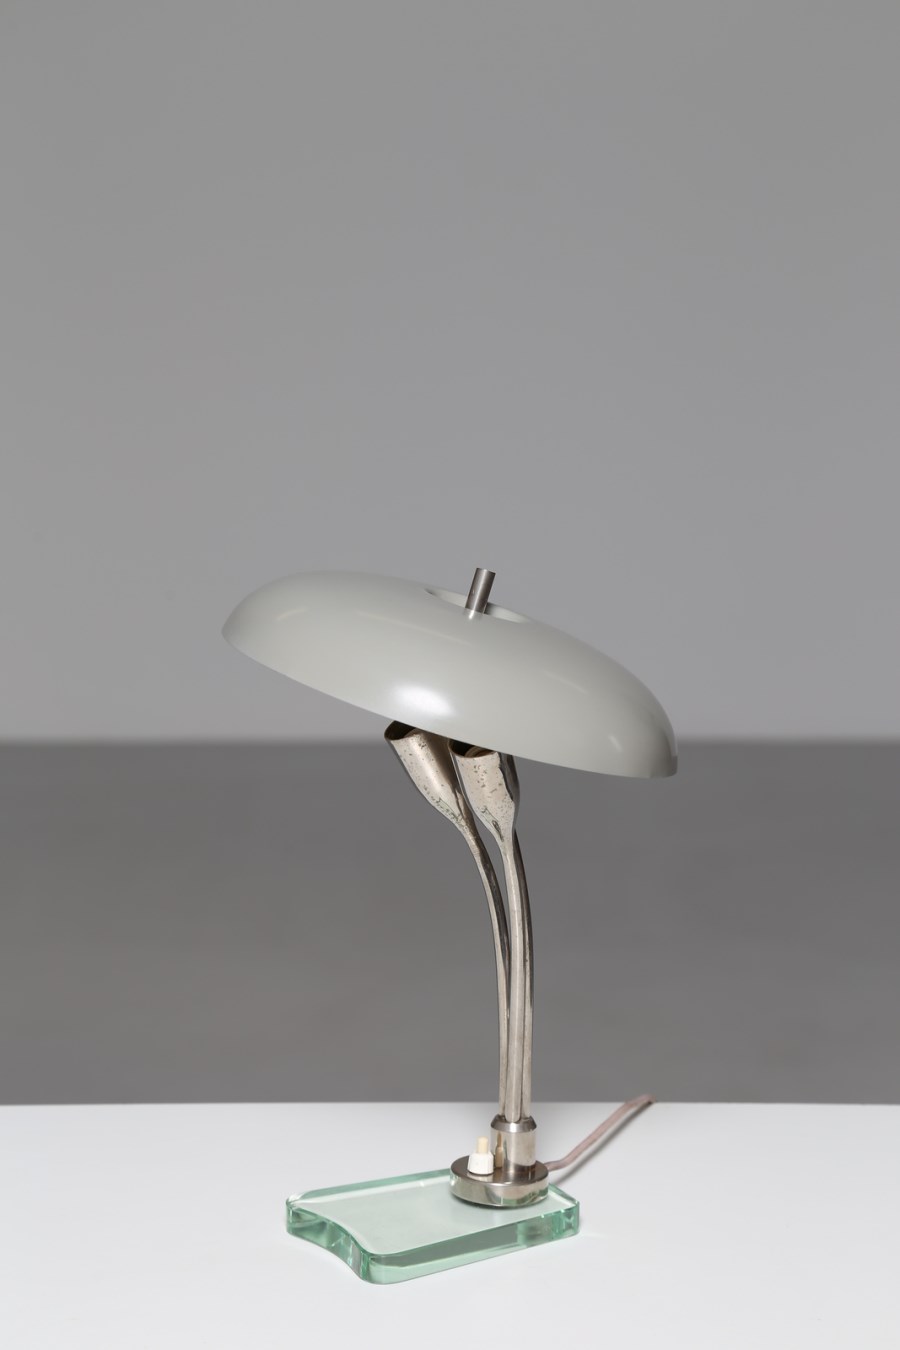 Attrib. Lampada da tavolo in metallo e ottone con base in vetro, per Fontana Arte, 1950 (Fontana Arte )